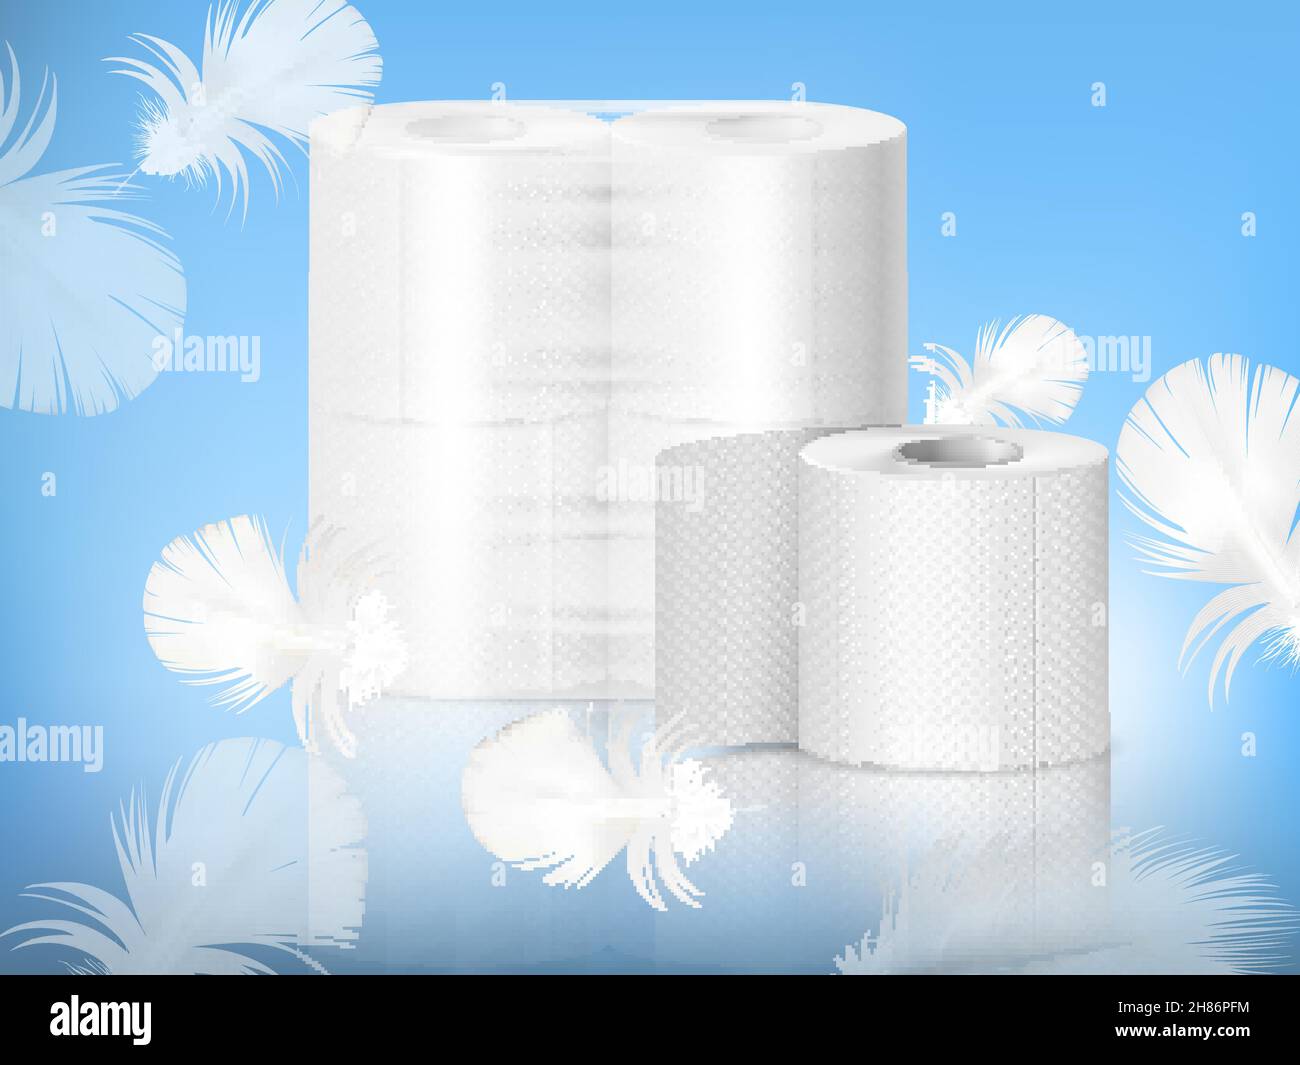 Papier toilette texturé blanc, rouleau unique et emballage en polyéthylène,  composition réaliste, fond bleu avec illustration vectorielle en plumes  Image Vectorielle Stock - Alamy